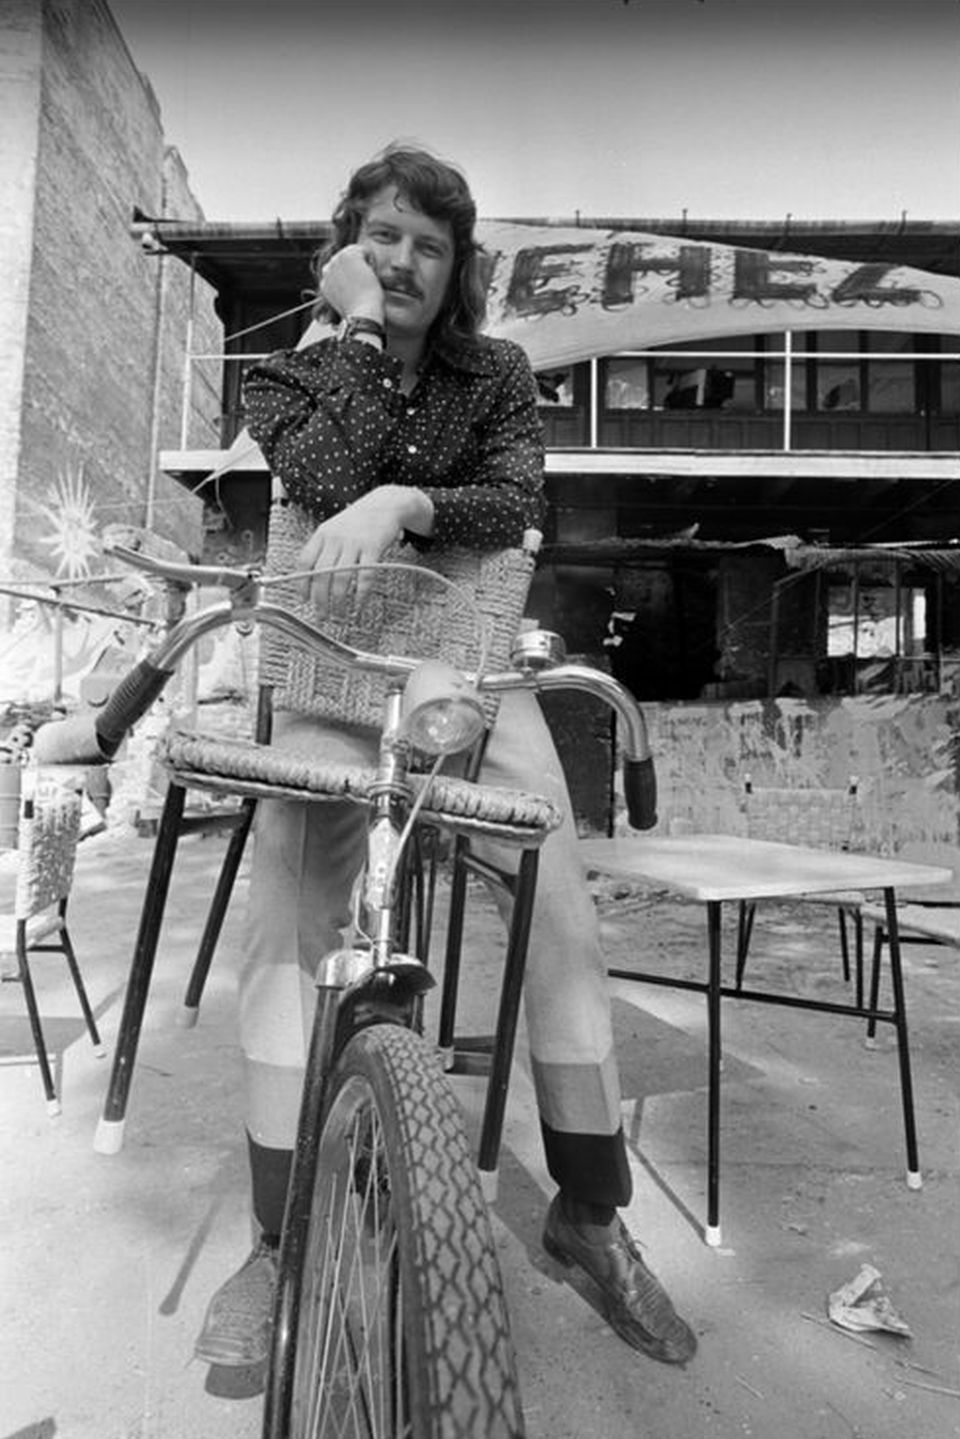 Pásztory Zoltán, az Illés-együttes dobosa egy kerékpáron az 1972-es Add a kezed (Illés show) forgatásán